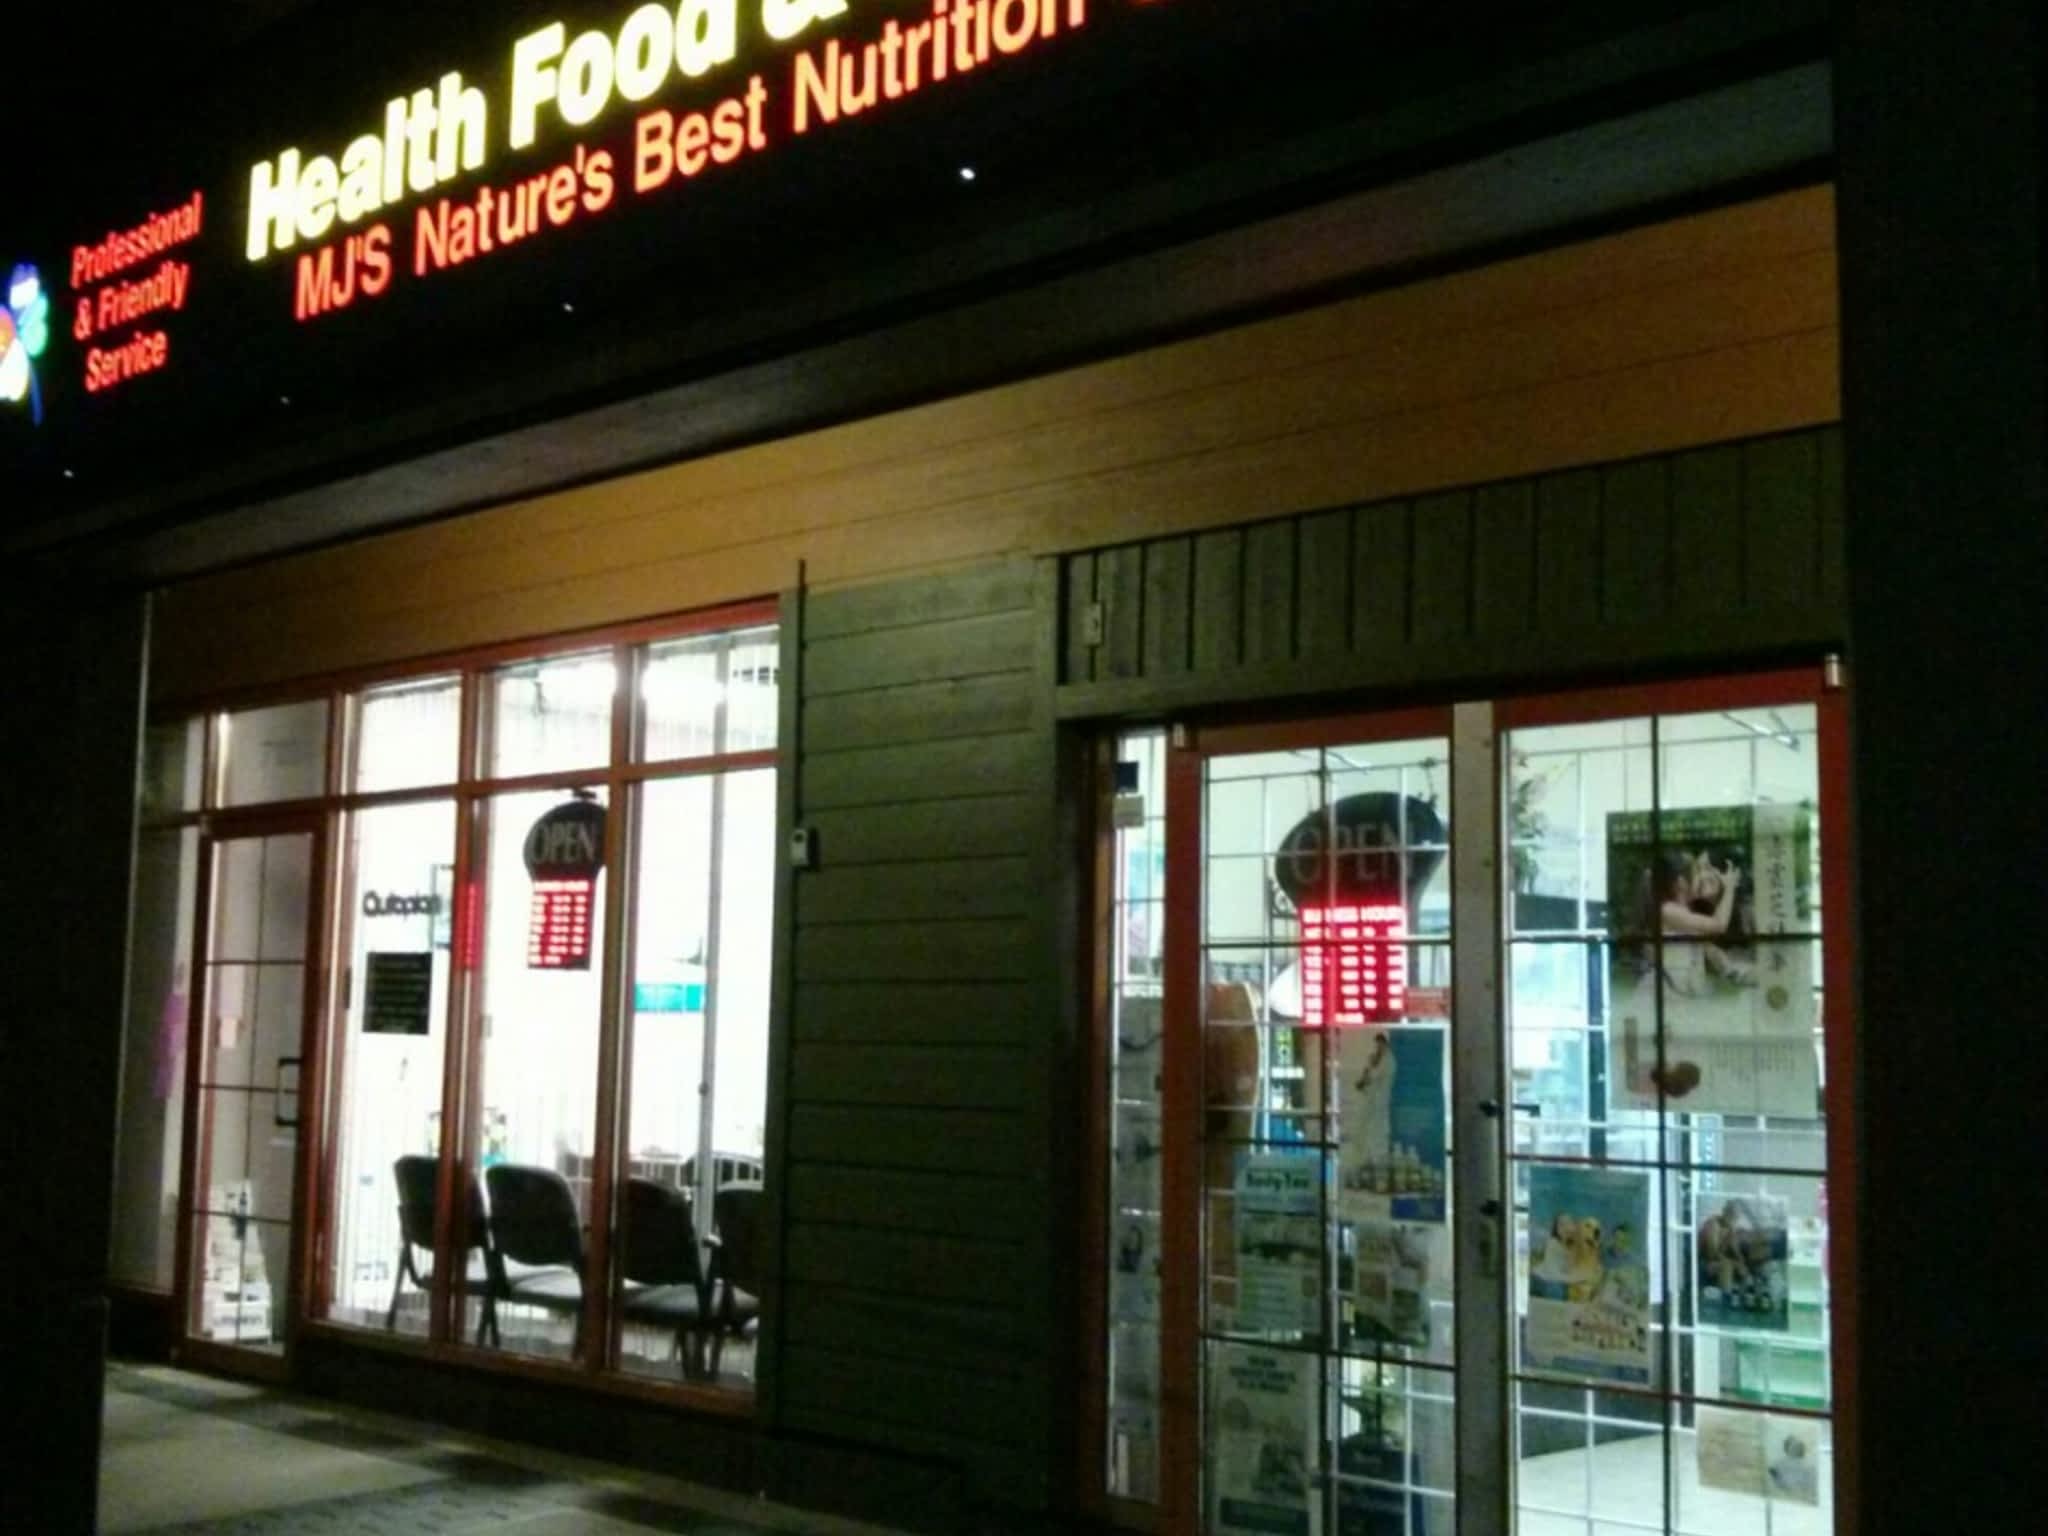 photo MJ's Nature's Best Nutrition Centre